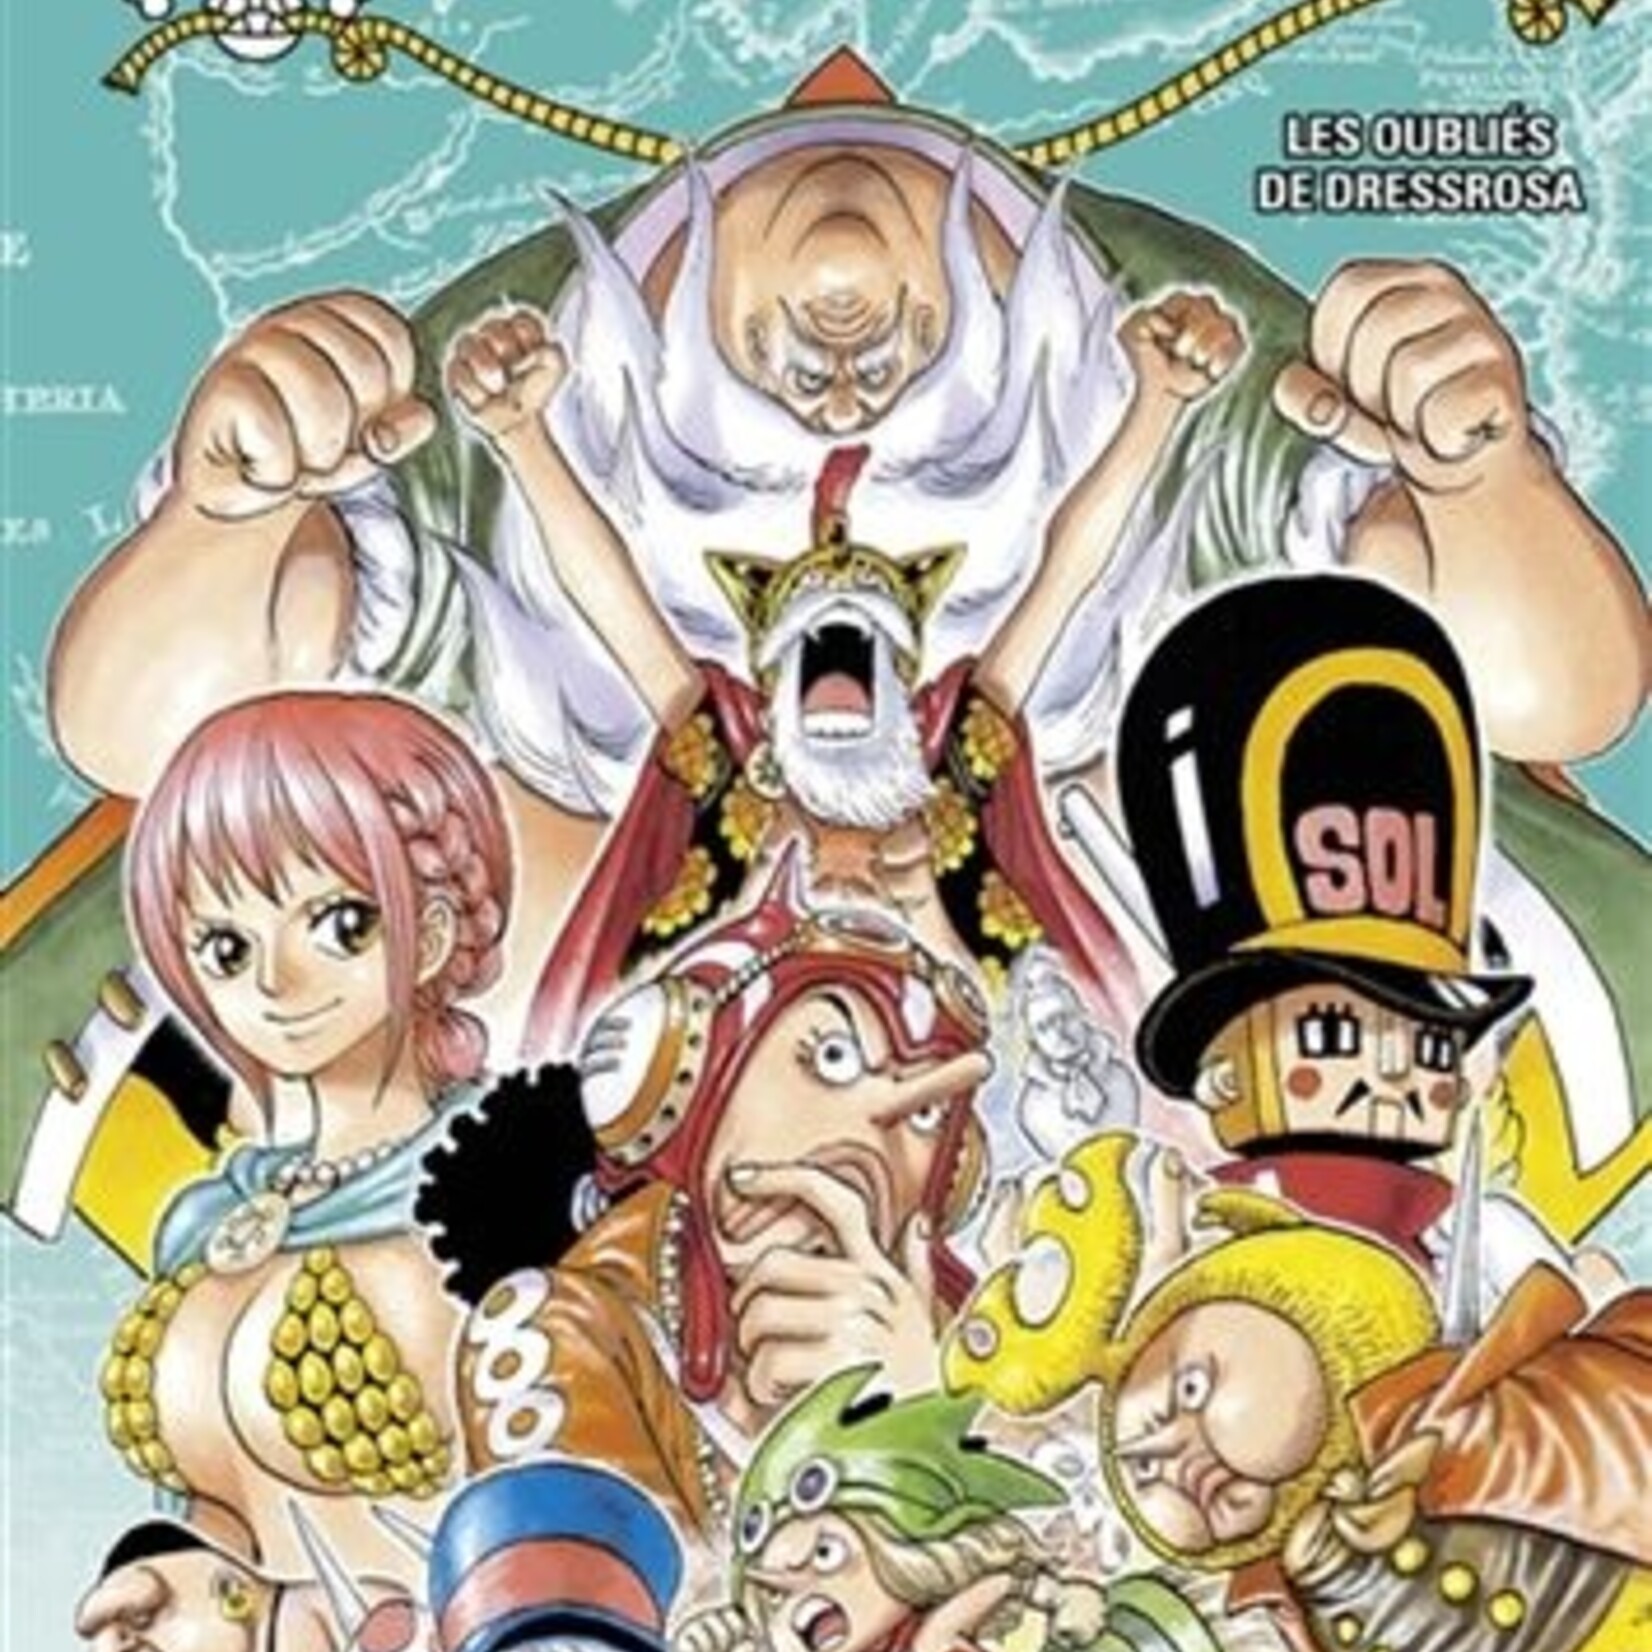 Glénat Manga - One Piece Tome 072